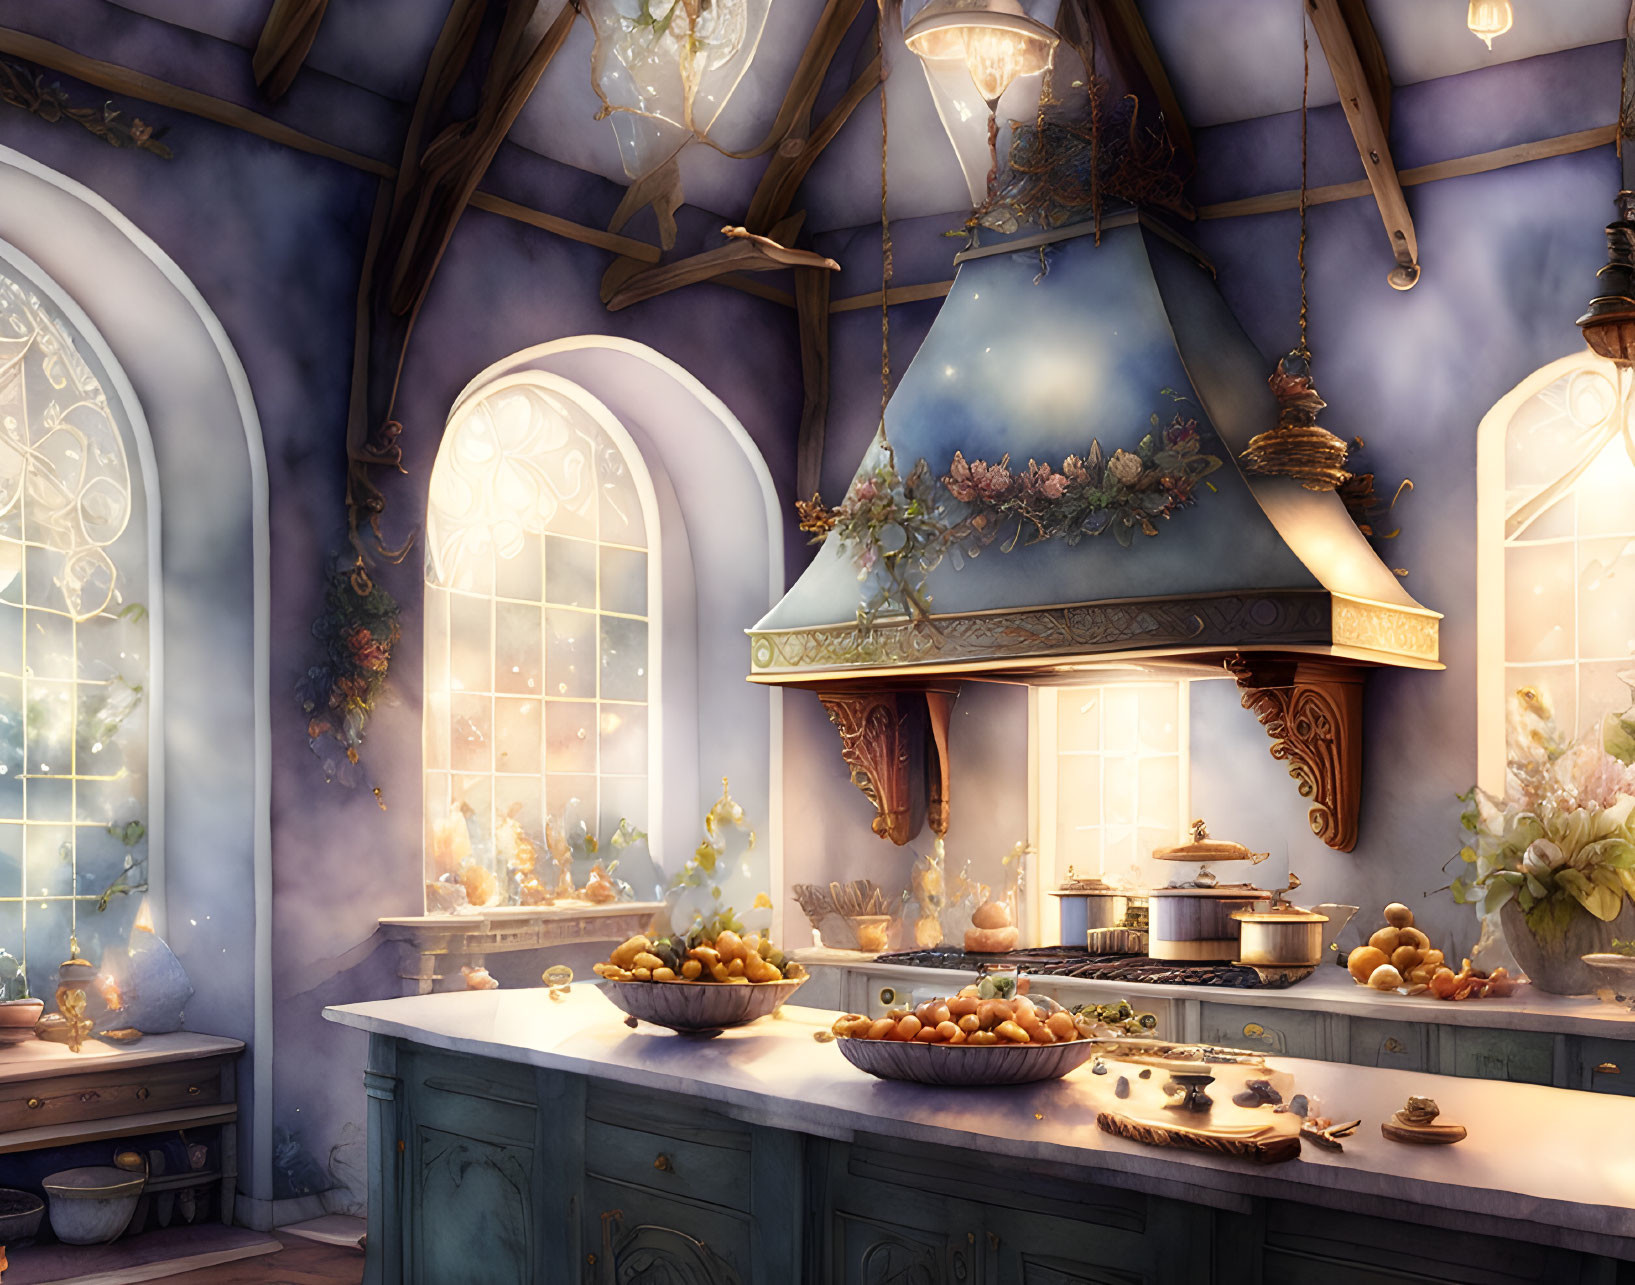 Fairy tale kitchen